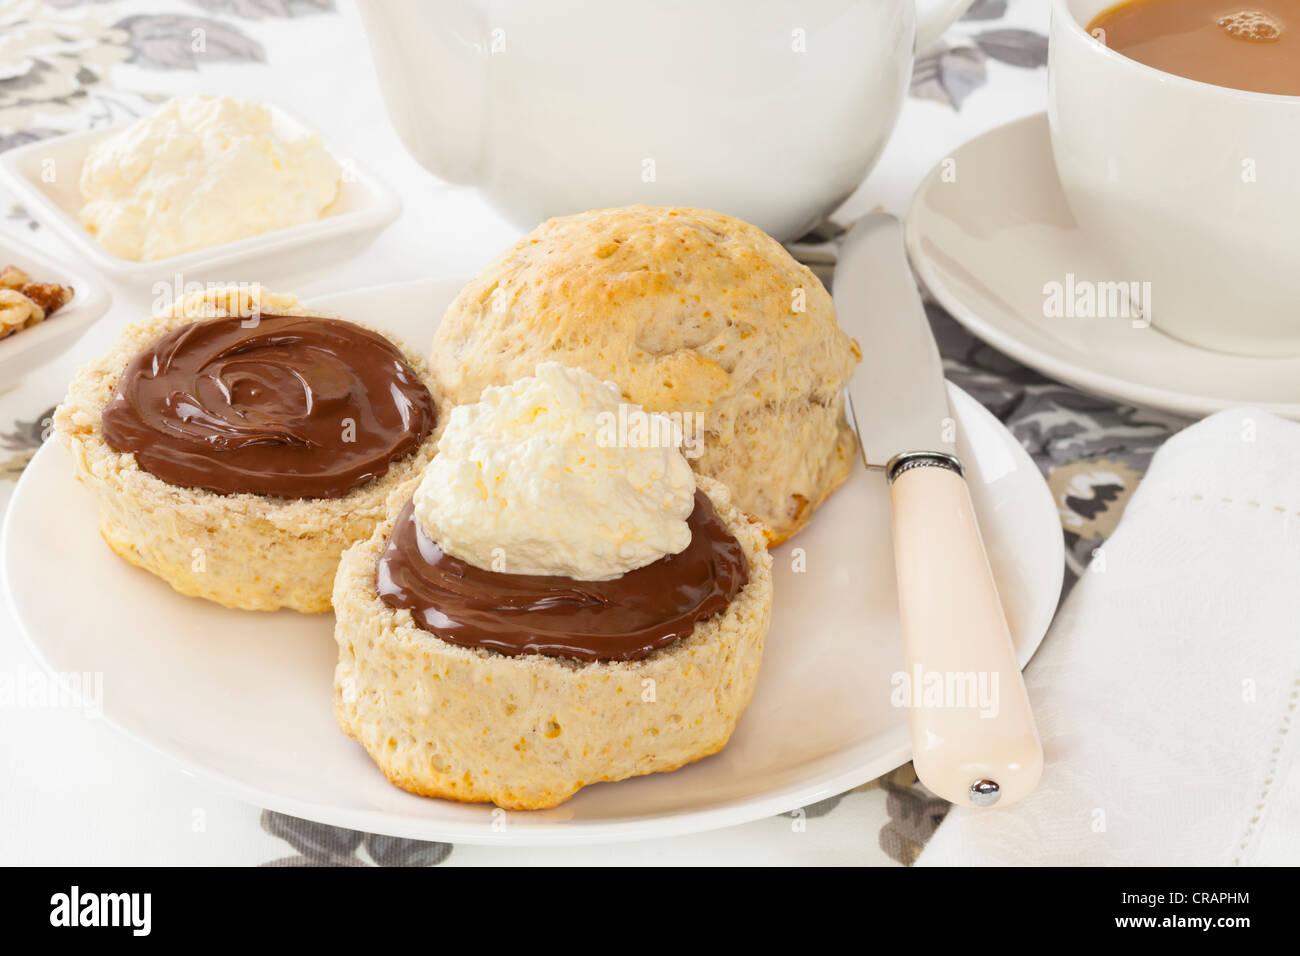 Nogal caseros scone con chocolate para untar y crema, servido con una taza de té. Foto de stock